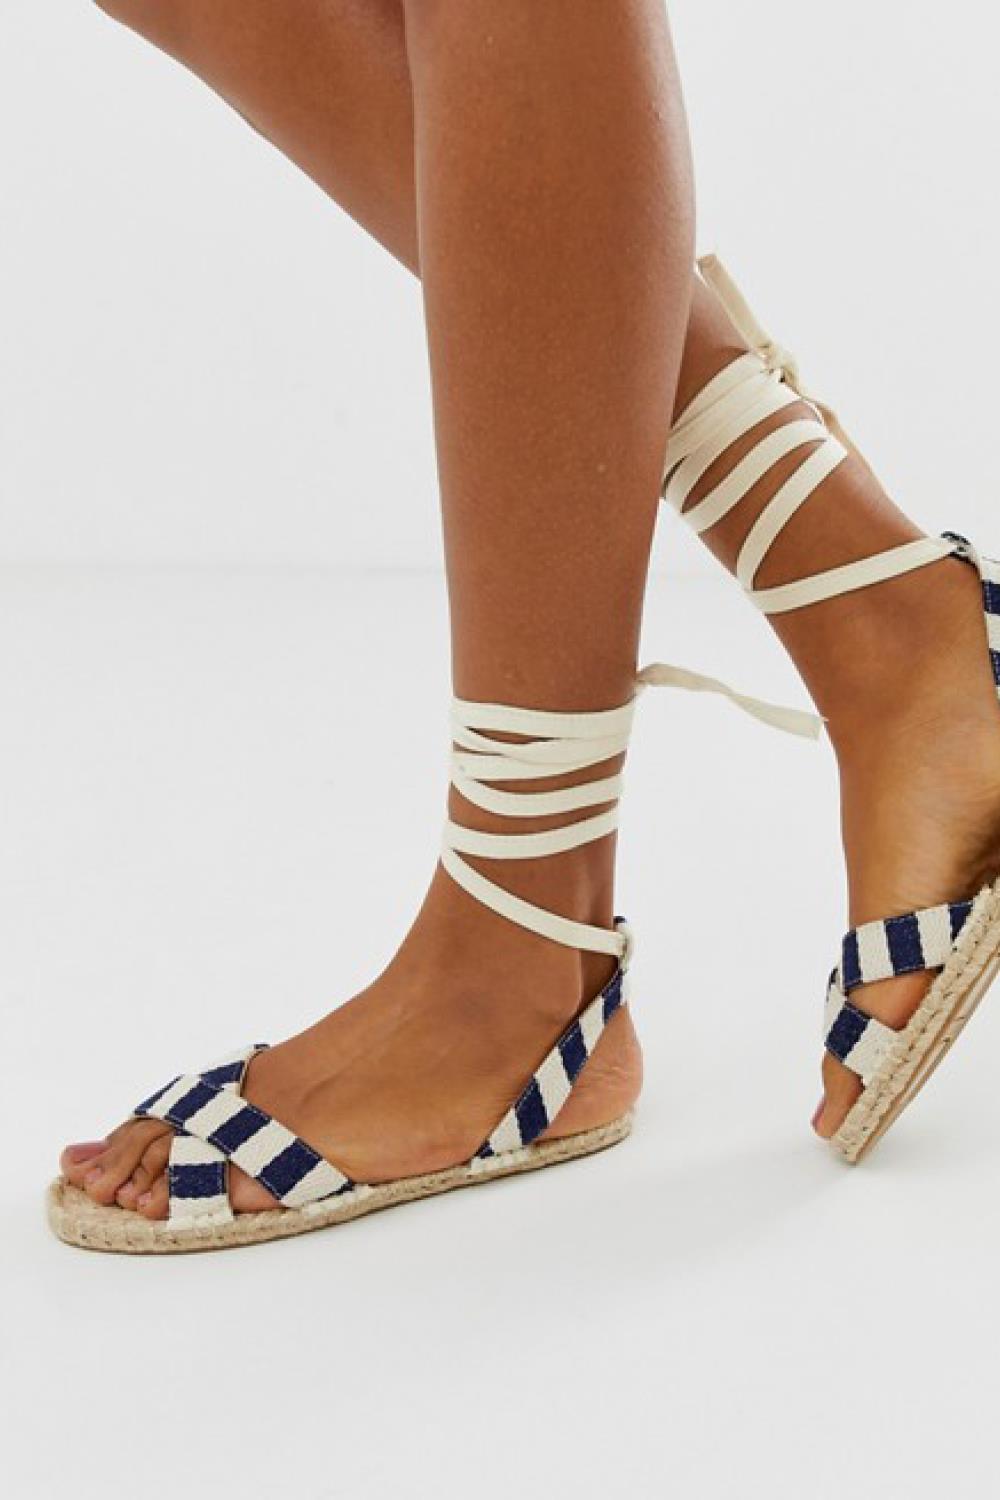 sandalias de moda rebajas 2019 asos 7,49€